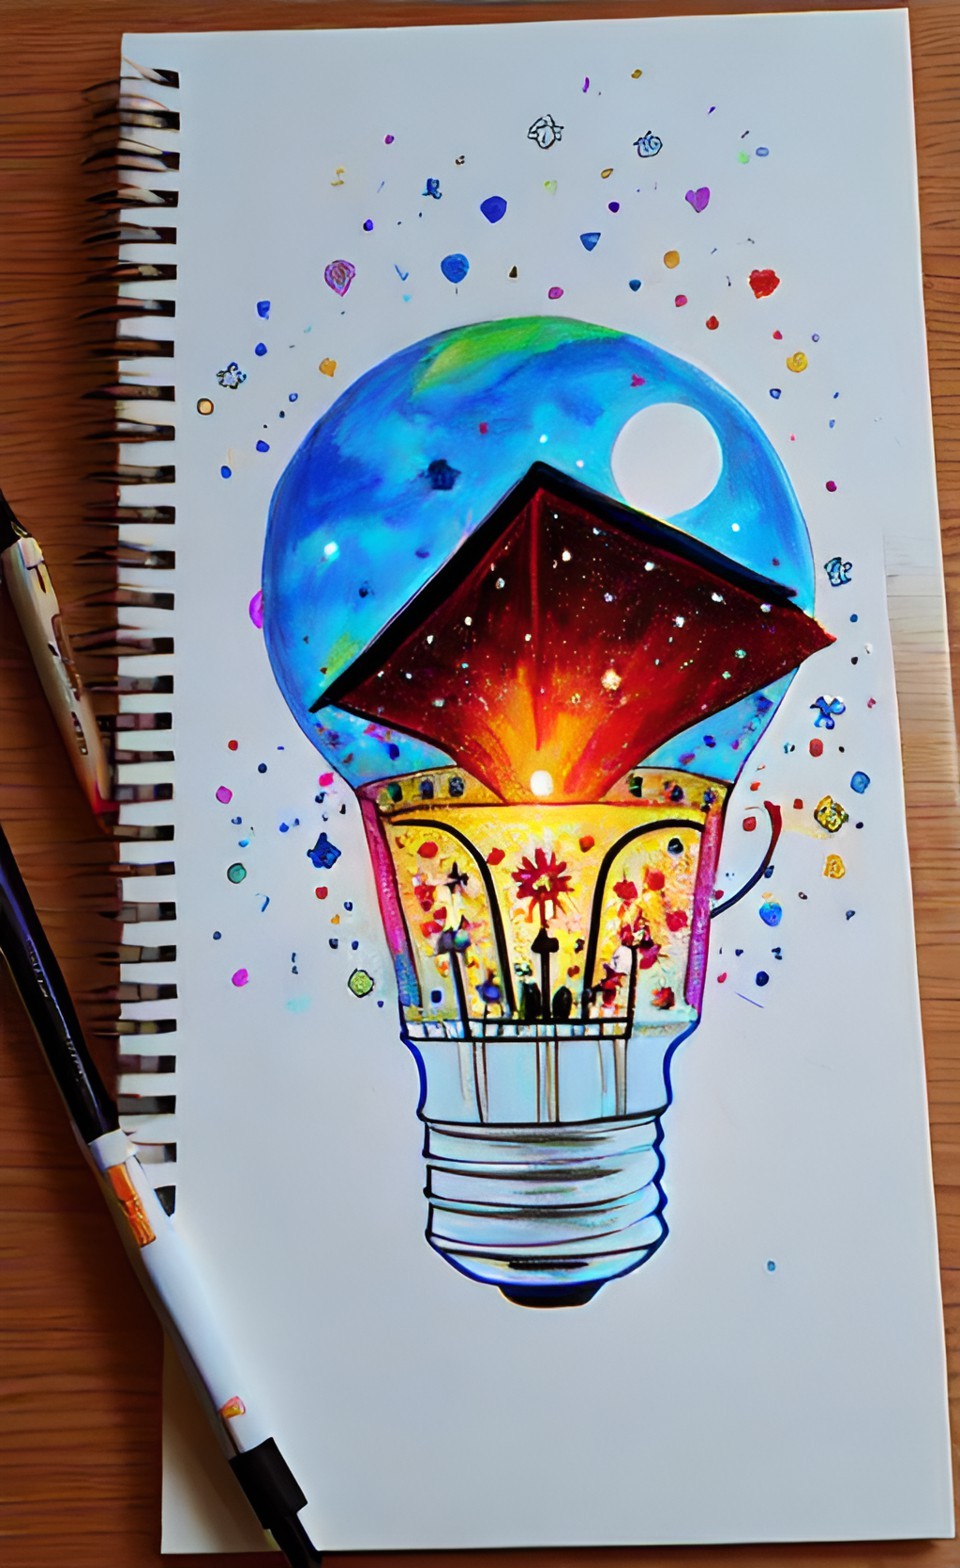 Defteriniz İçin Çizim Fikirleri #5- Drawing Ideas for Your Drawing Notebook